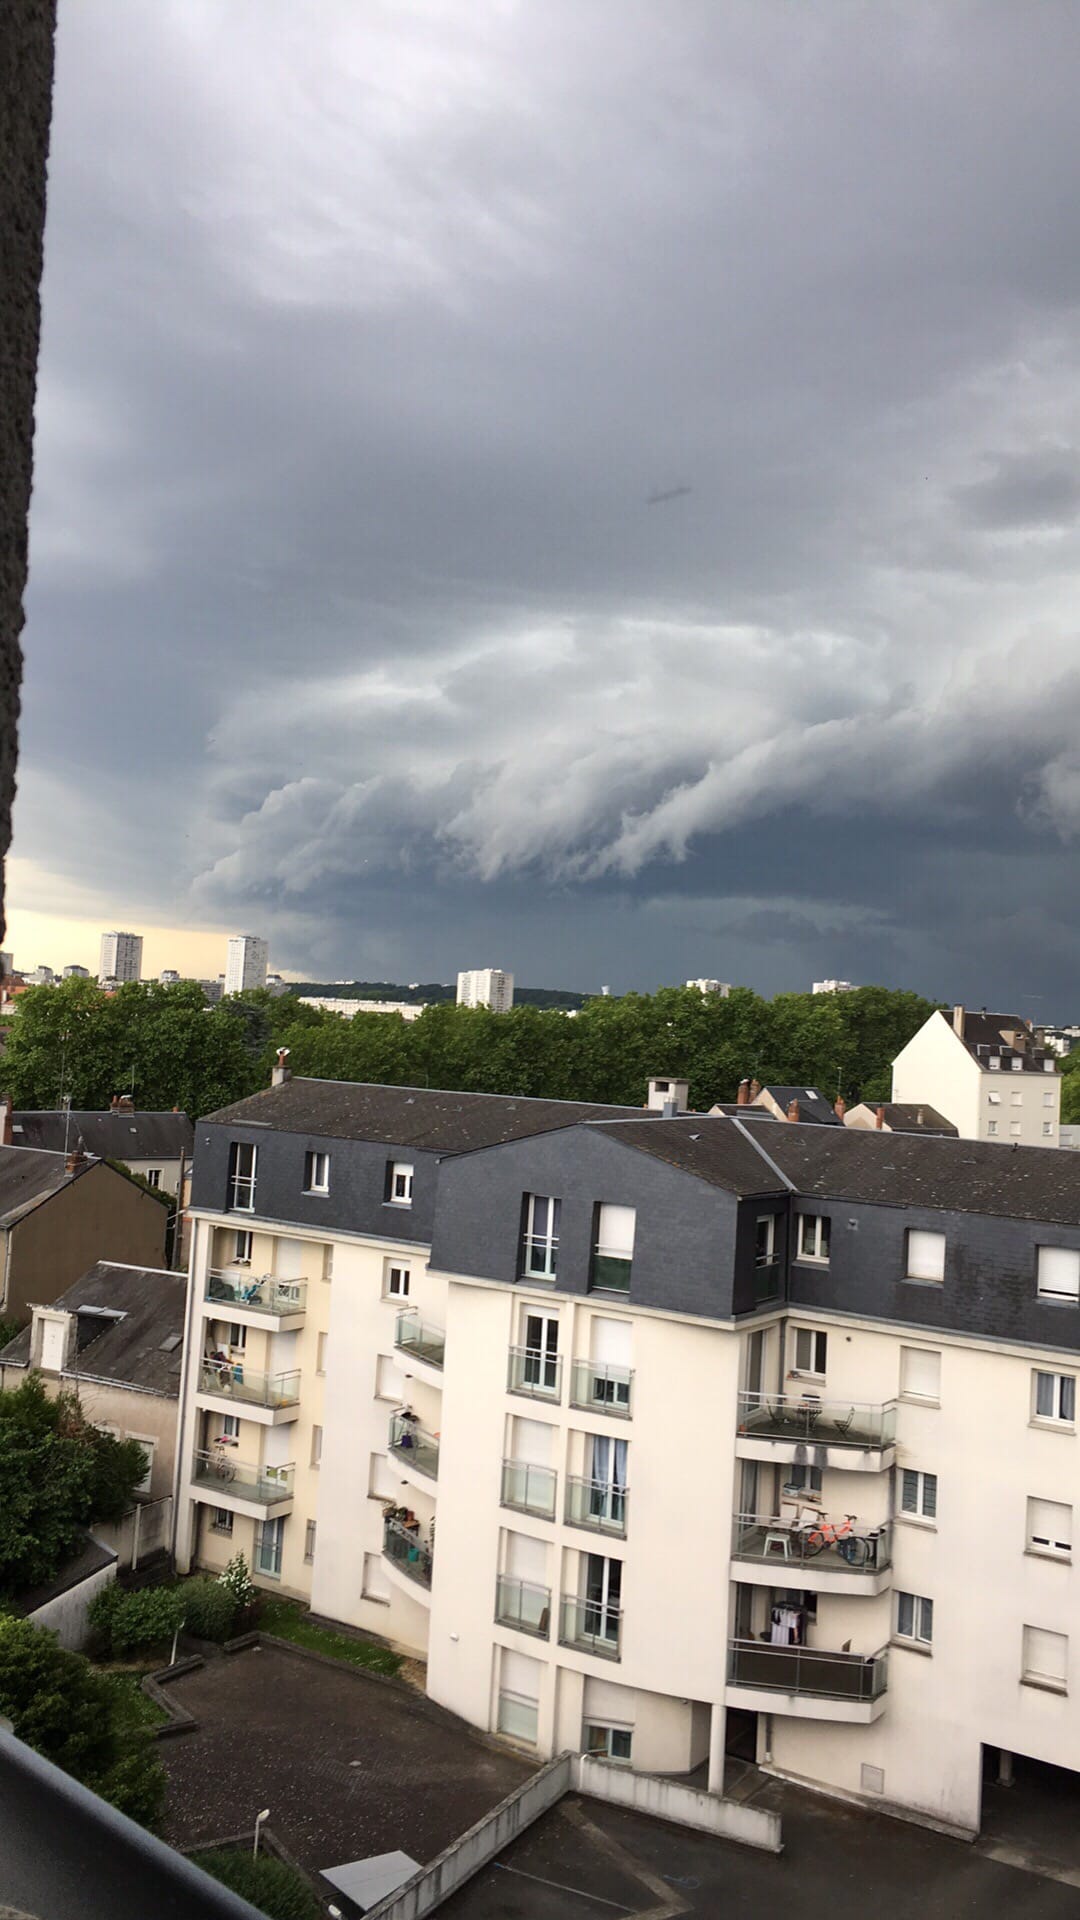 Arriver de l’orage à tours - 26/05/2018 18:10 - Thierry Rosée